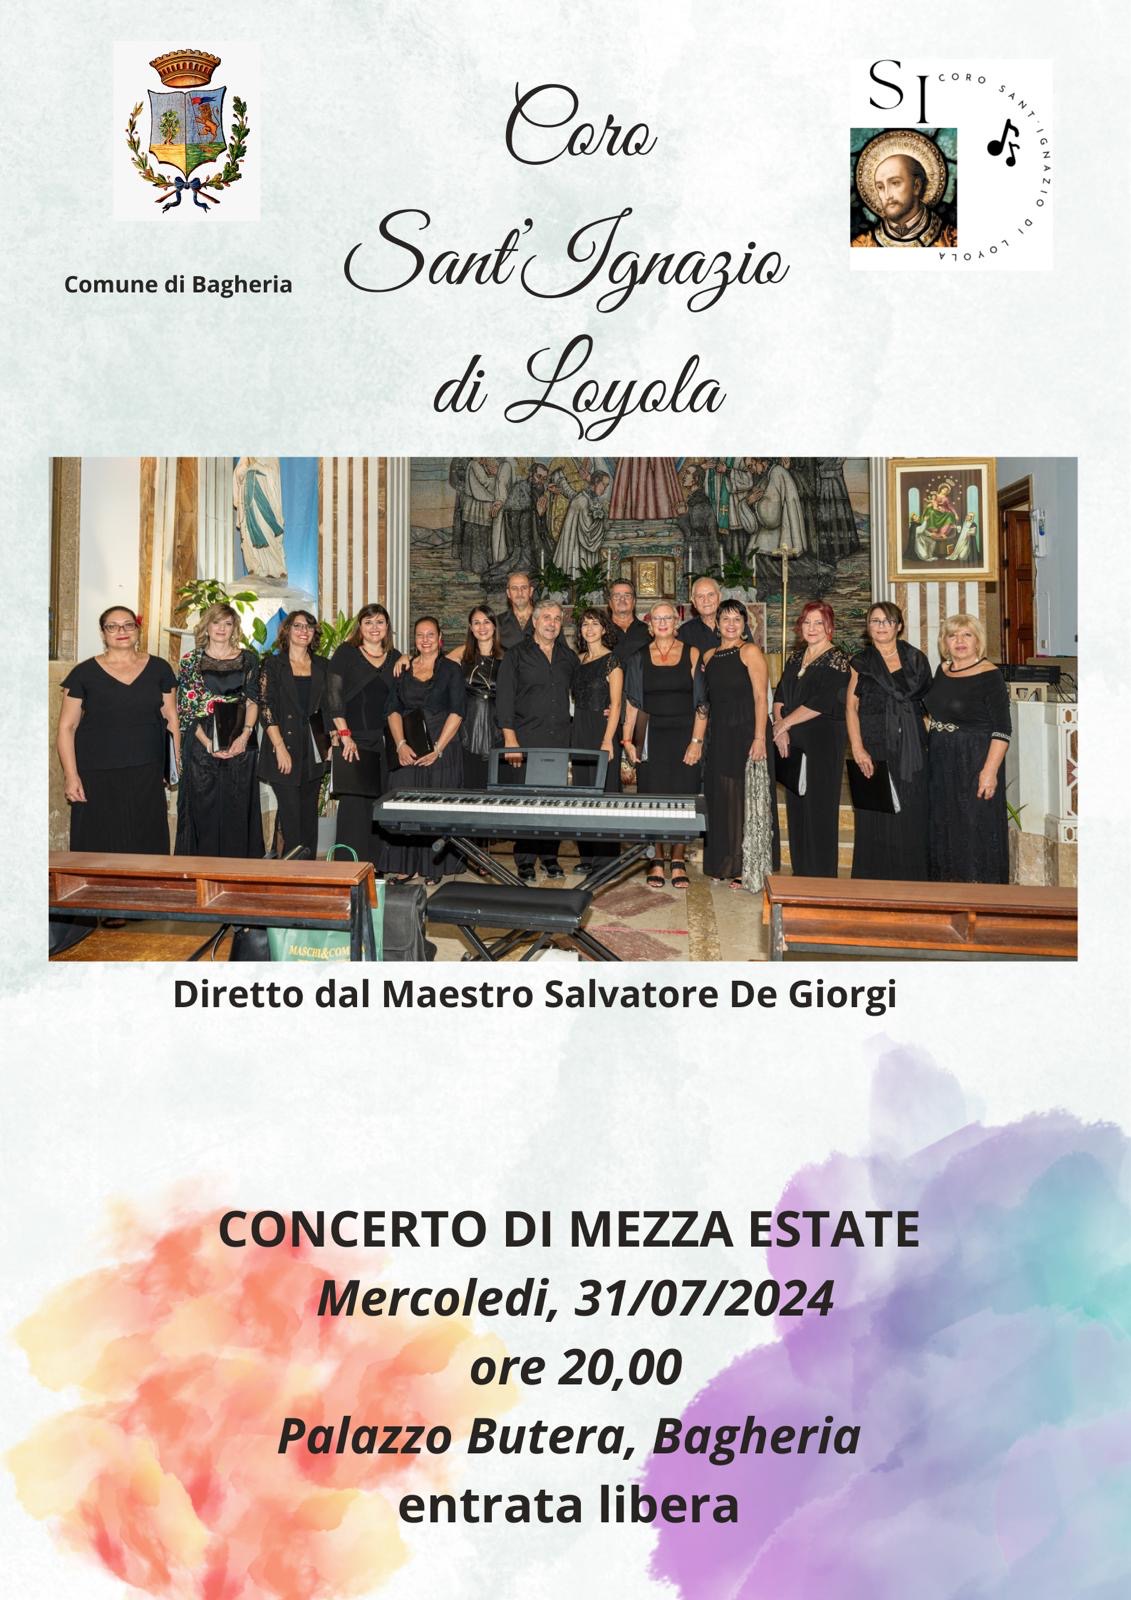  Concerto di Mezza Estate del coro Sant’Ignazio di Loyola a palazzo Butera.